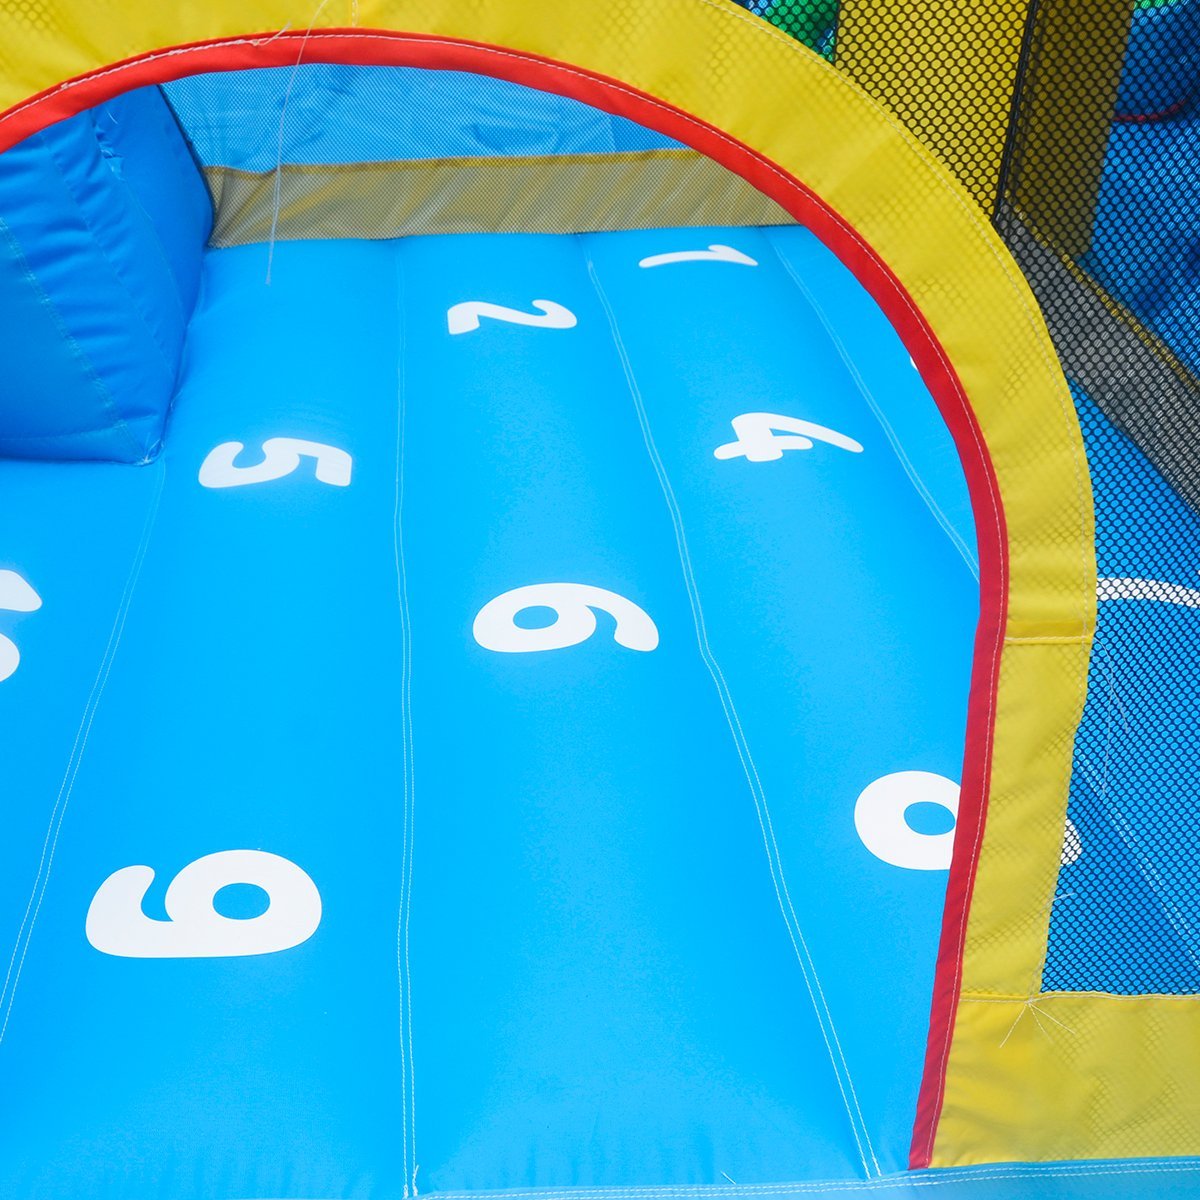 Lifespan Kids Bouncefort Plus Inflatable Castle